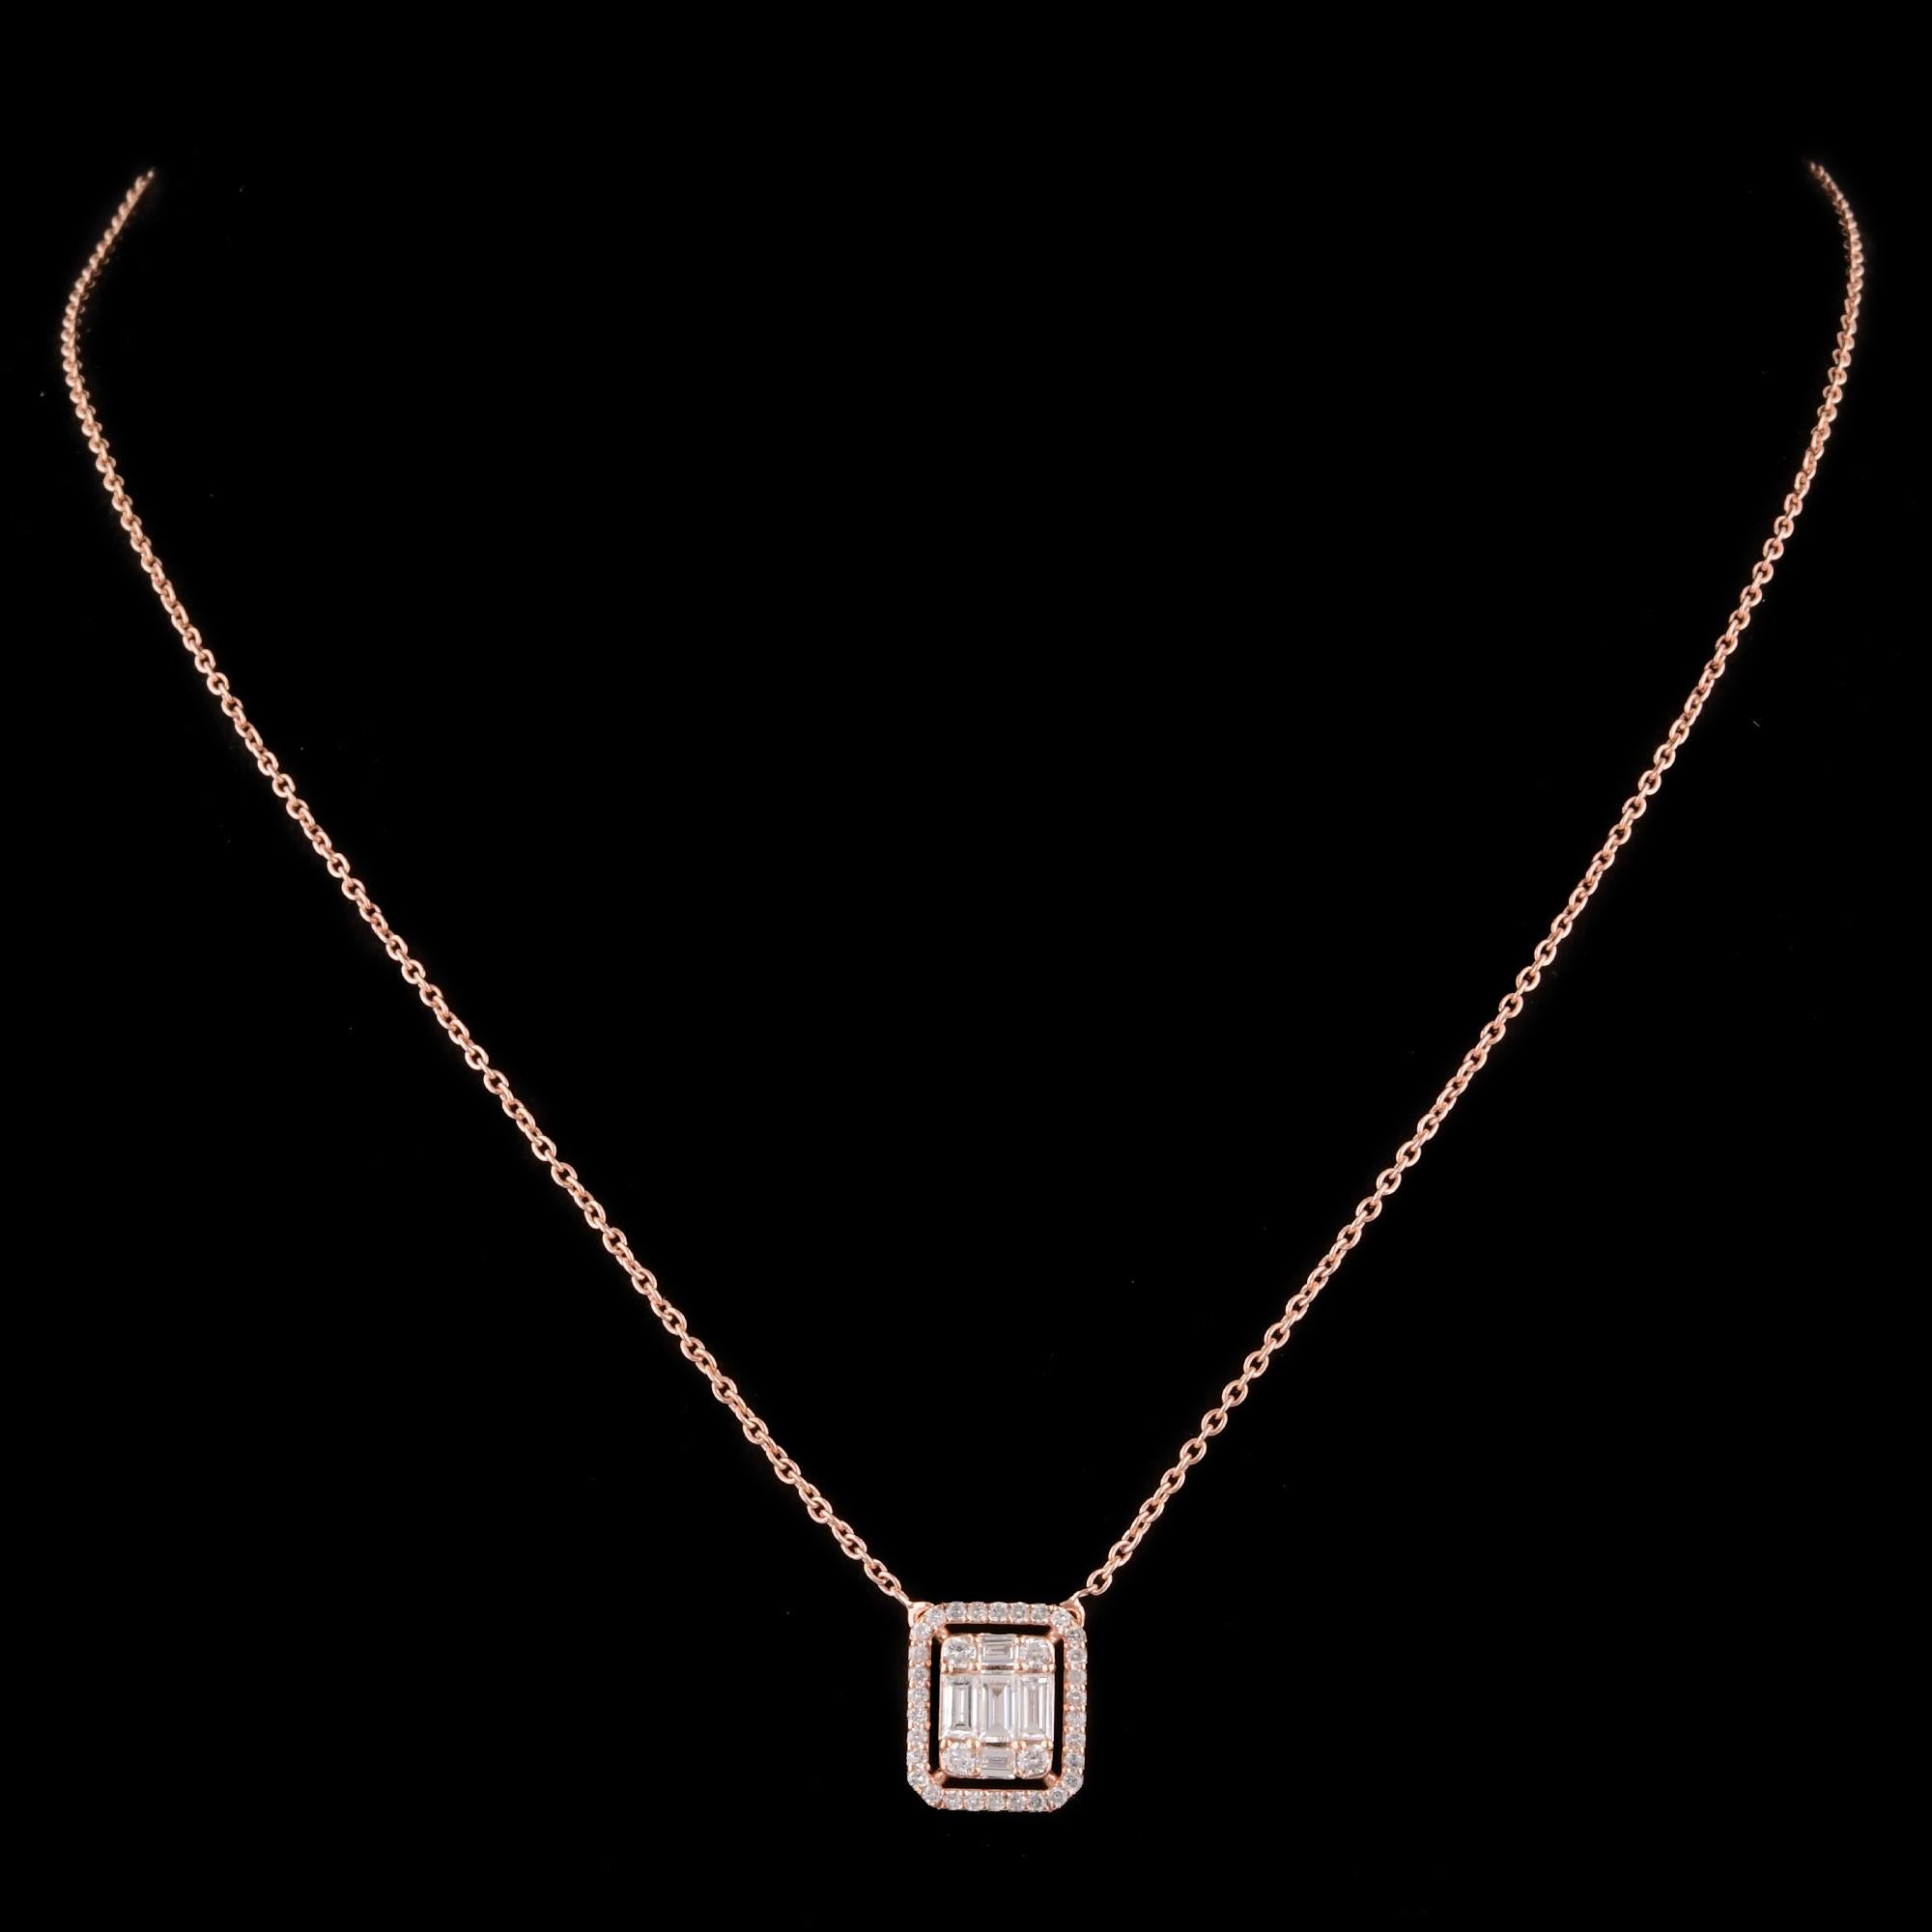 Laissez-vous séduire par l'allure intemporelle de la joaillerie fine avec cet exquis collier pendentif à breloques en diamants baguettes et ronds, véritable chef-d'œuvre d'artisanat et d'élégance. Méticuleusement fabriqué à la main dans un luxueux